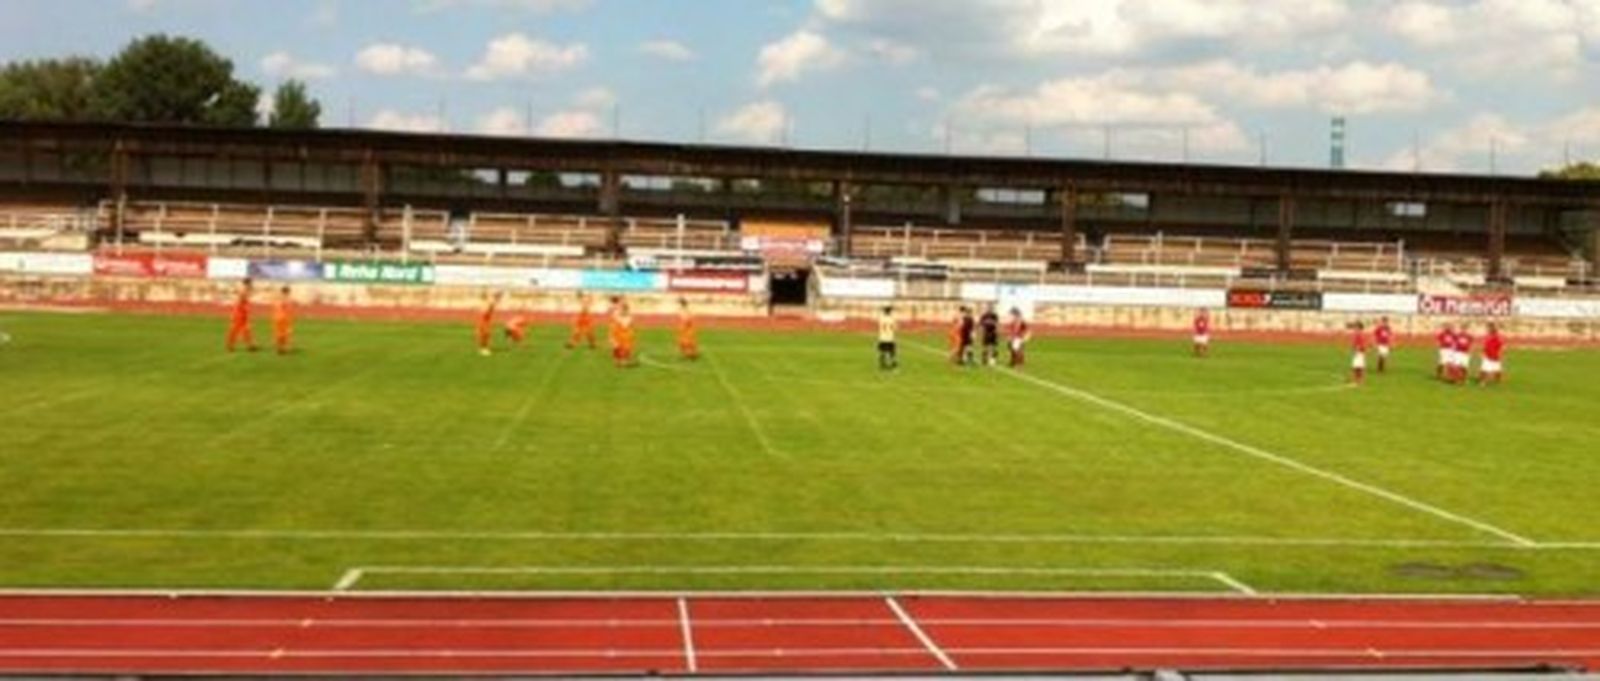 Die Party im Heinz-Steyer-Stadion verlor der SC Borea mit 4:2 nun soll am Sonntag die Revanche folgen.